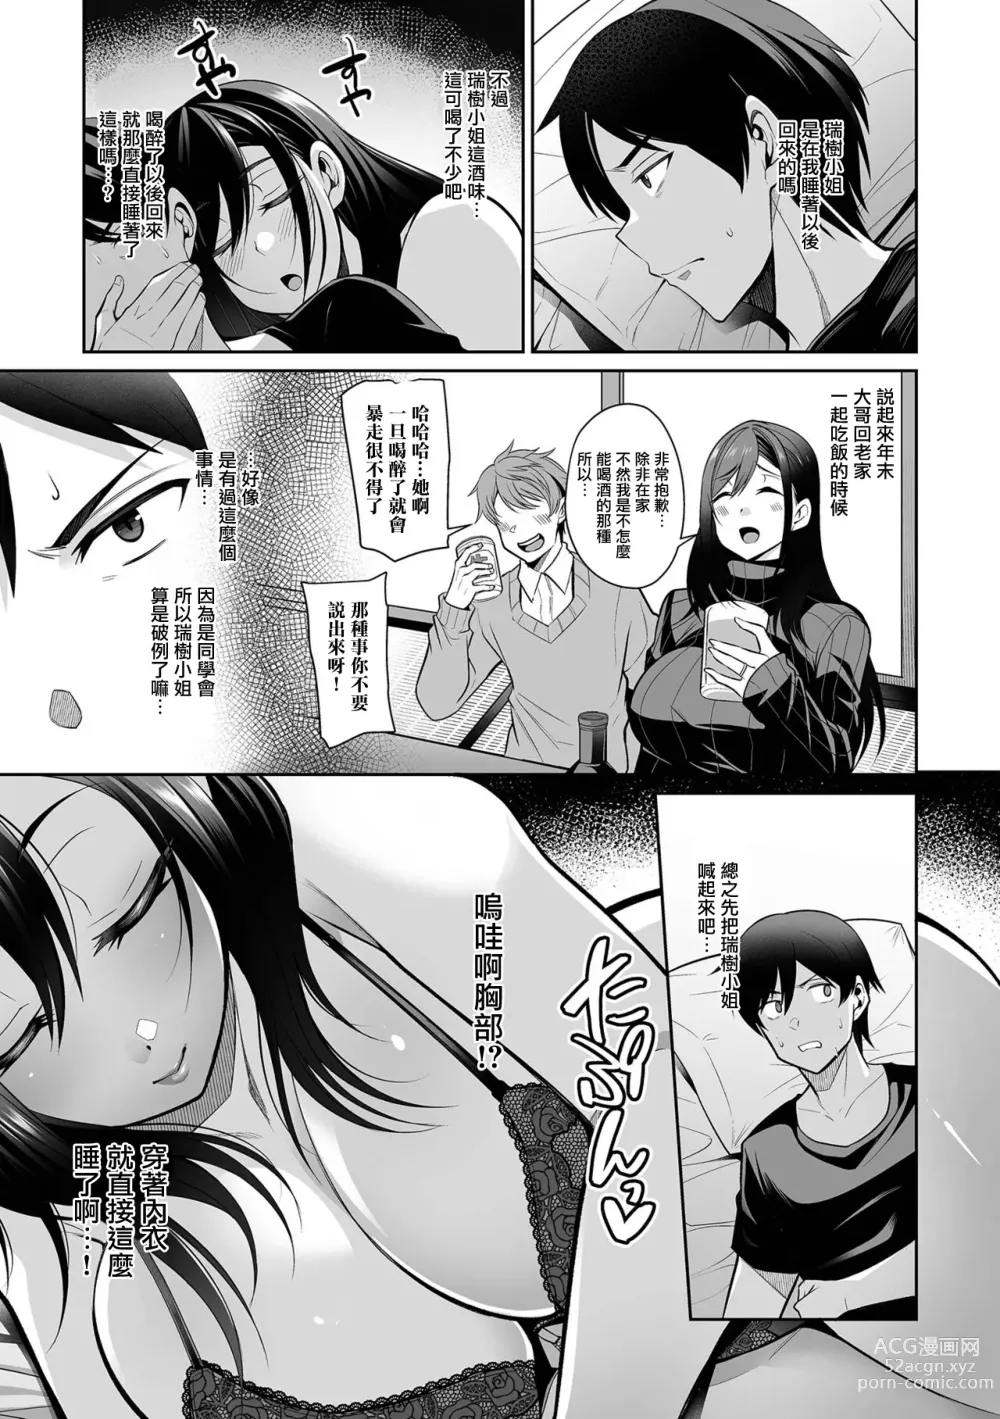 Page 3 of manga NikYobai Aniyome